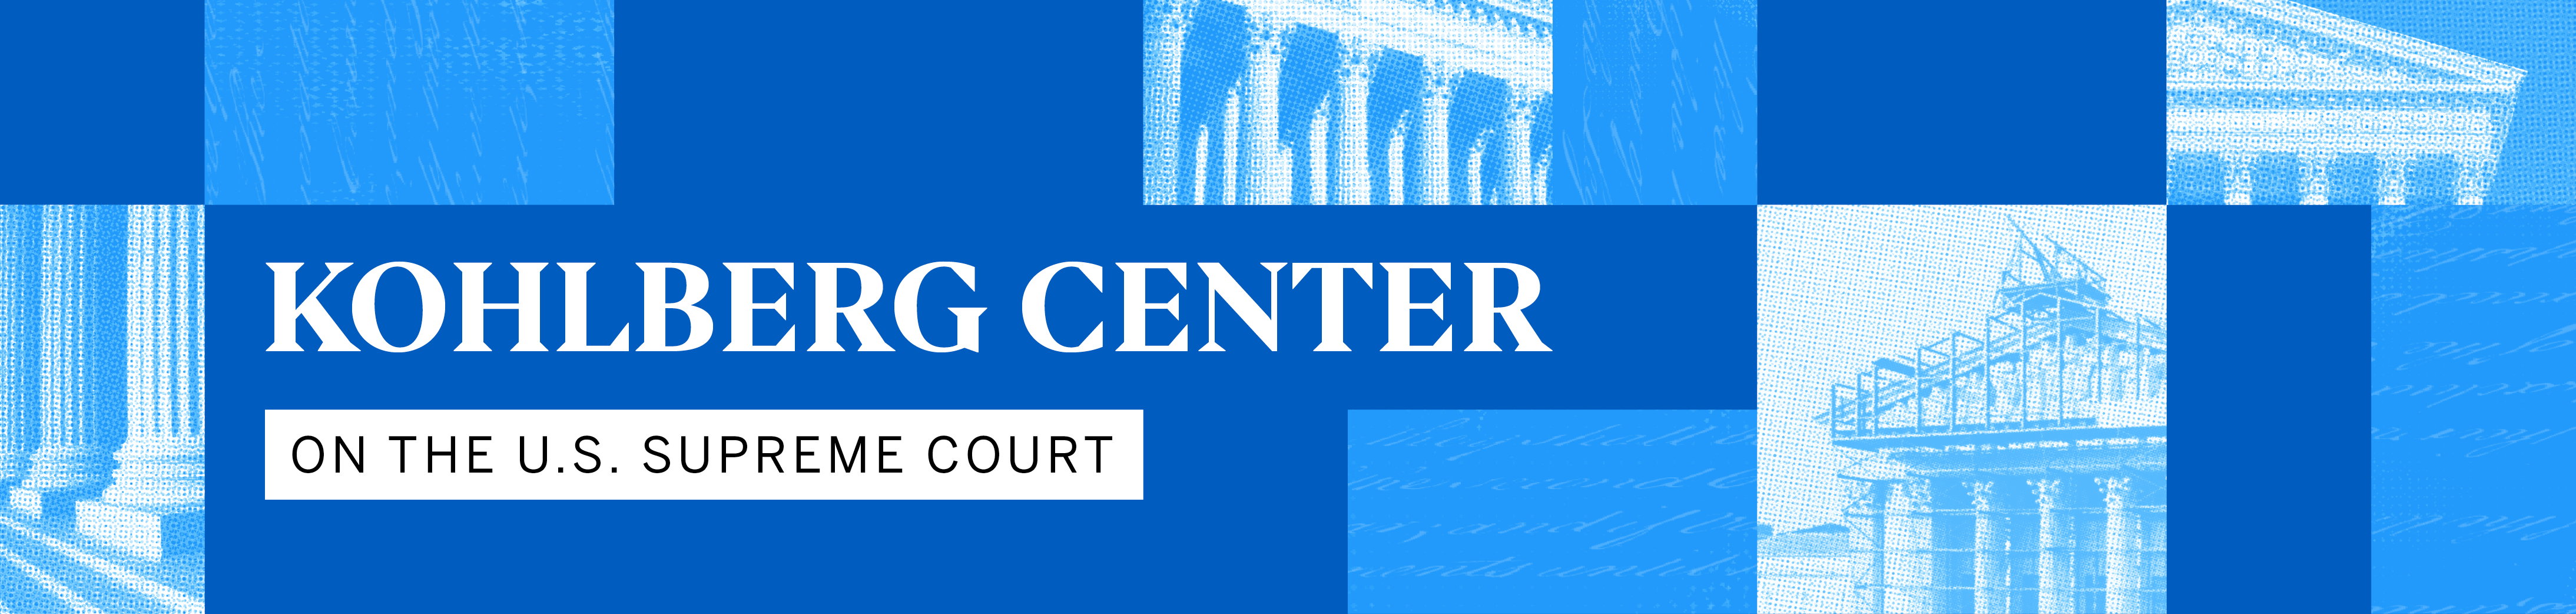 Kohlberg Center on the Supreme Court banner image